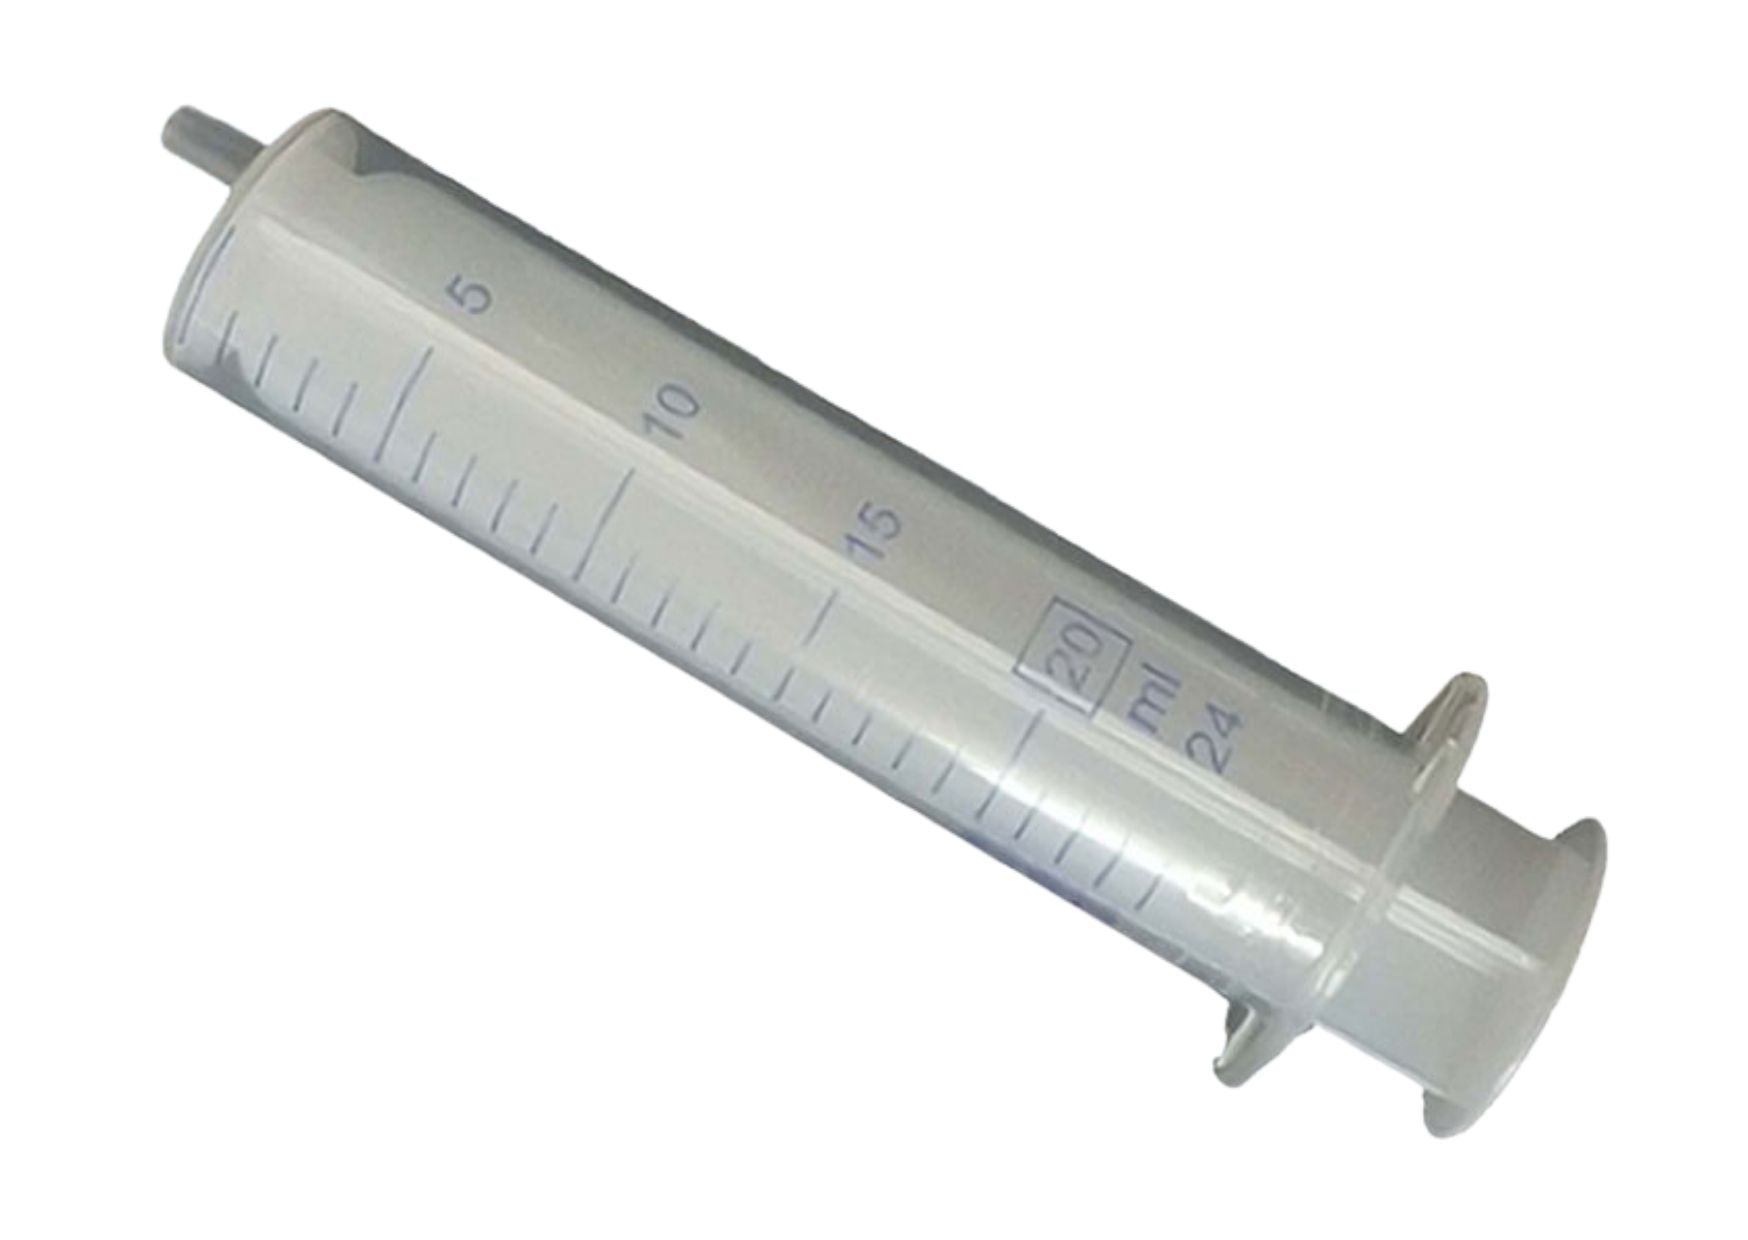 Disposable syringe, Luer attachment, 2-piece